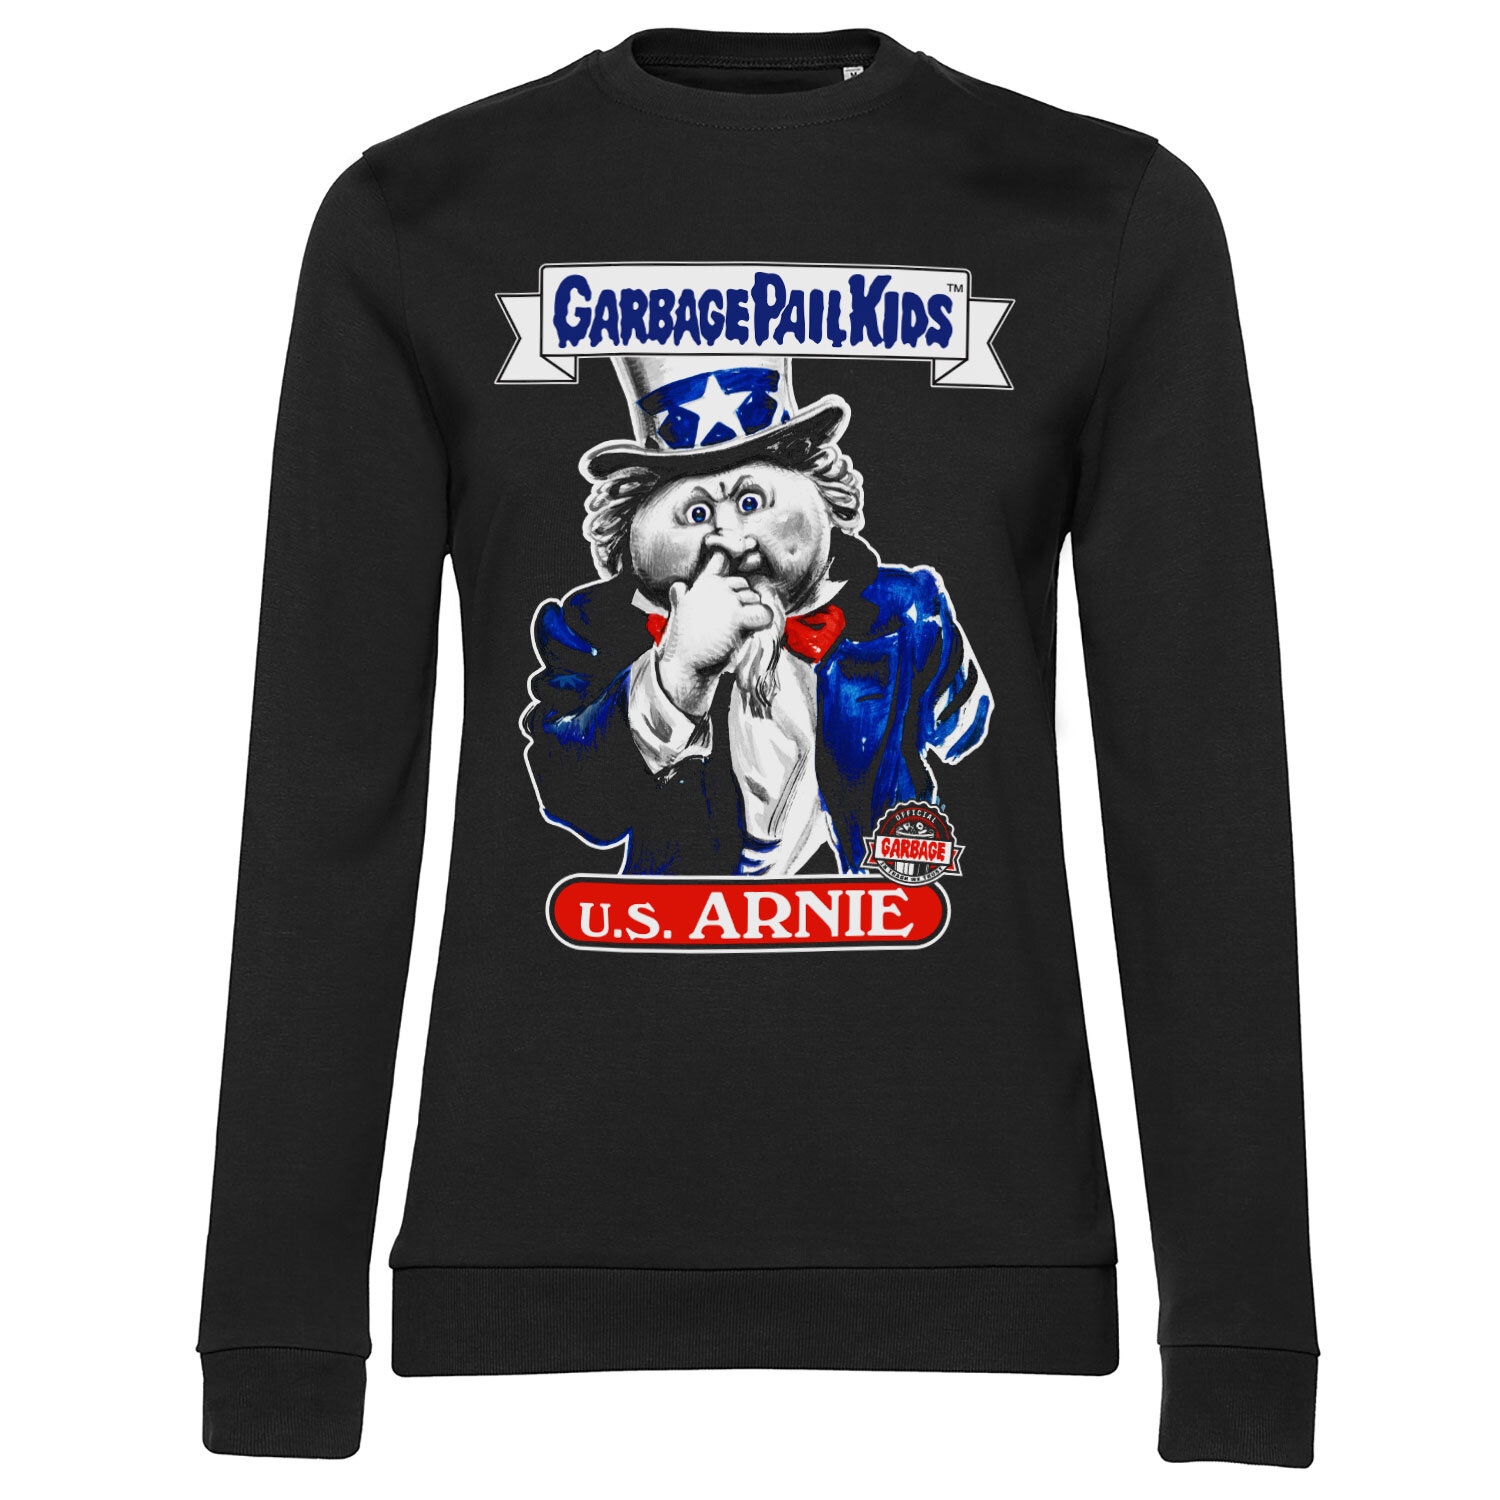 U.S. Arnie Girly Sweatshirt